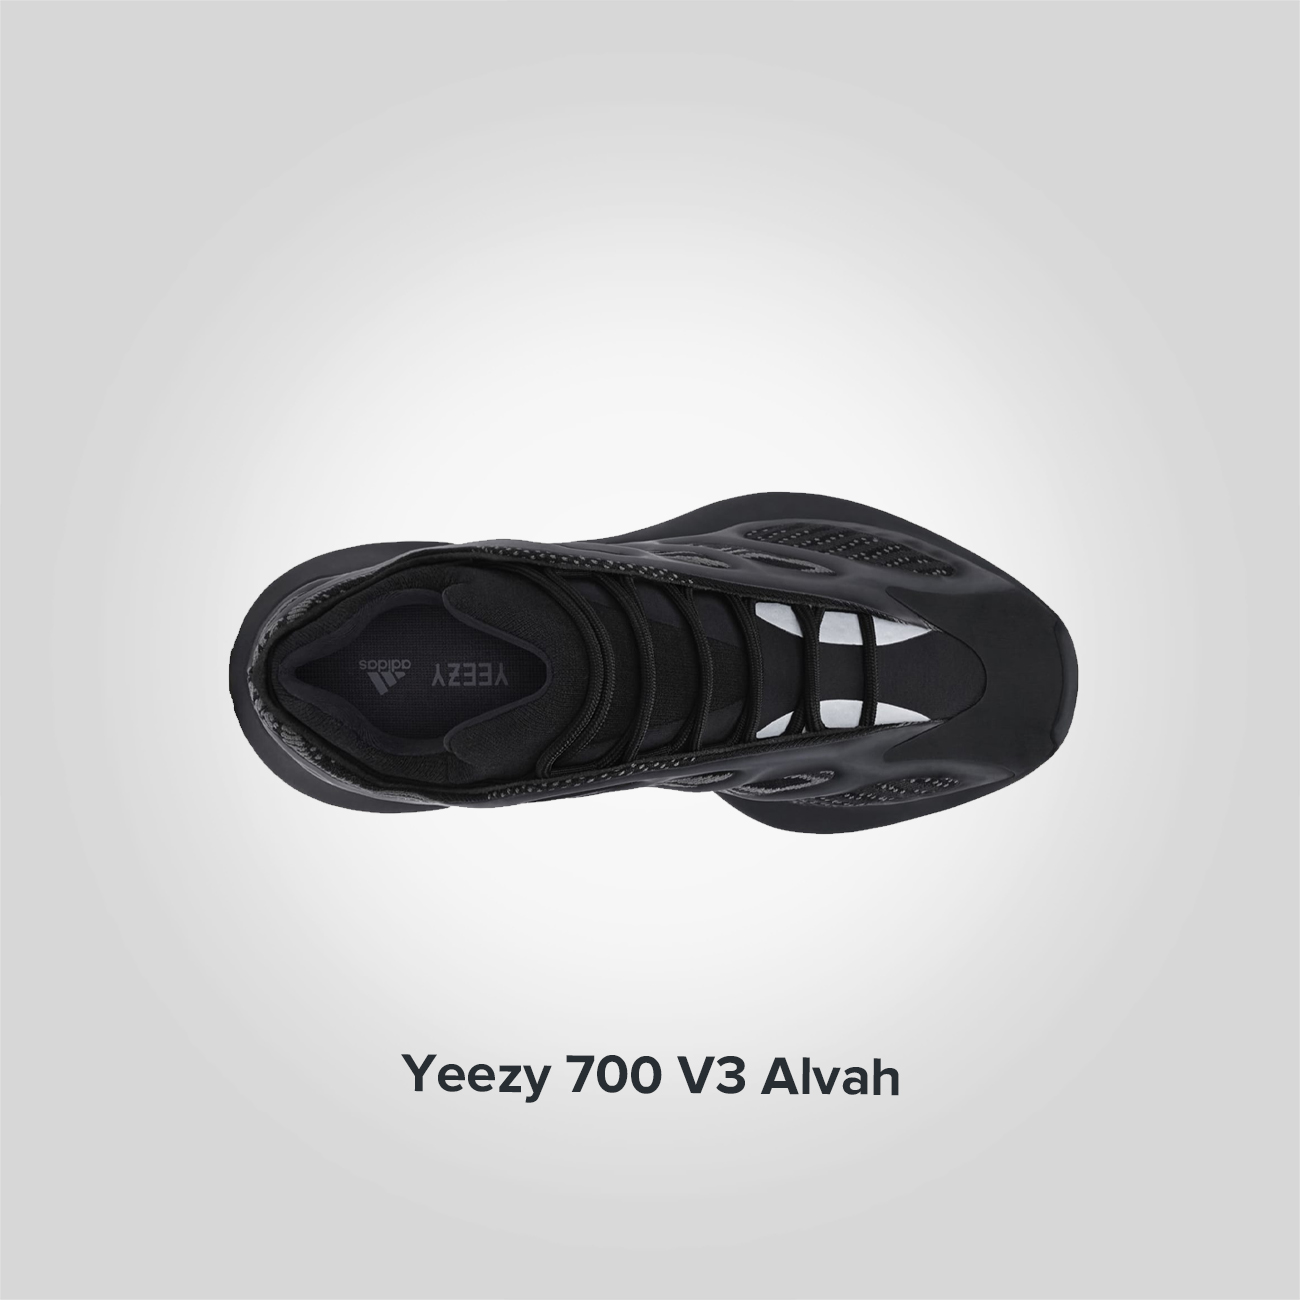 Yeezy 700 V3 Alvah